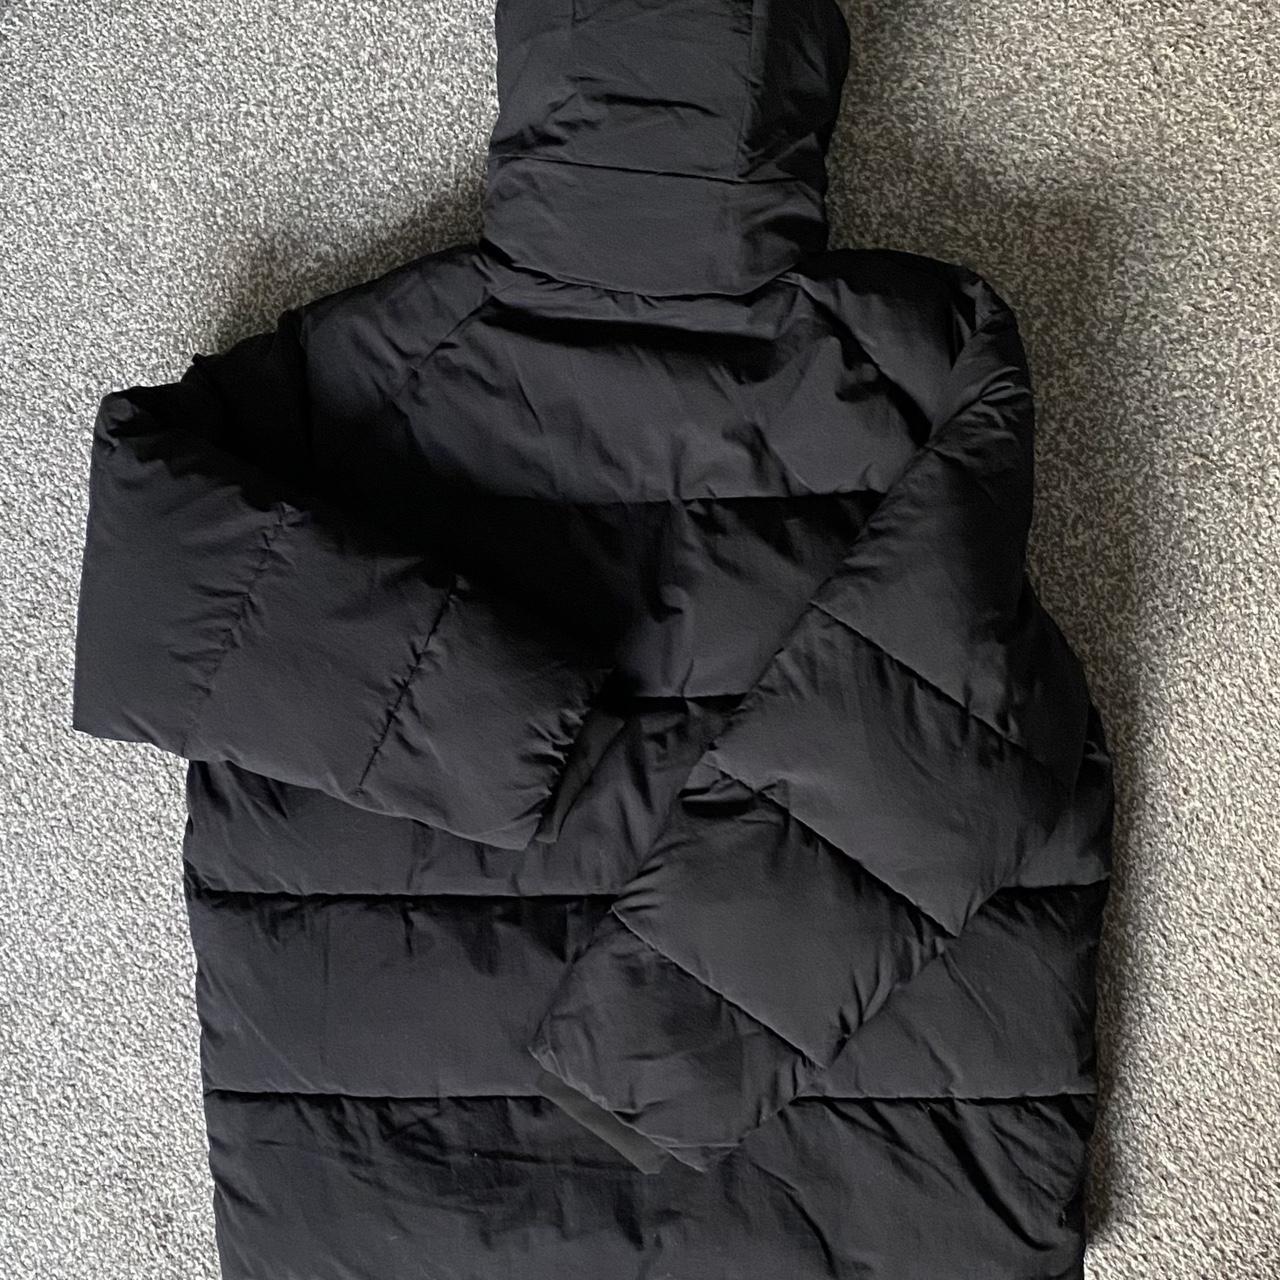 Carhartt WIP Puffer Jacket/Coat in Black ⚫️ This... - Depop